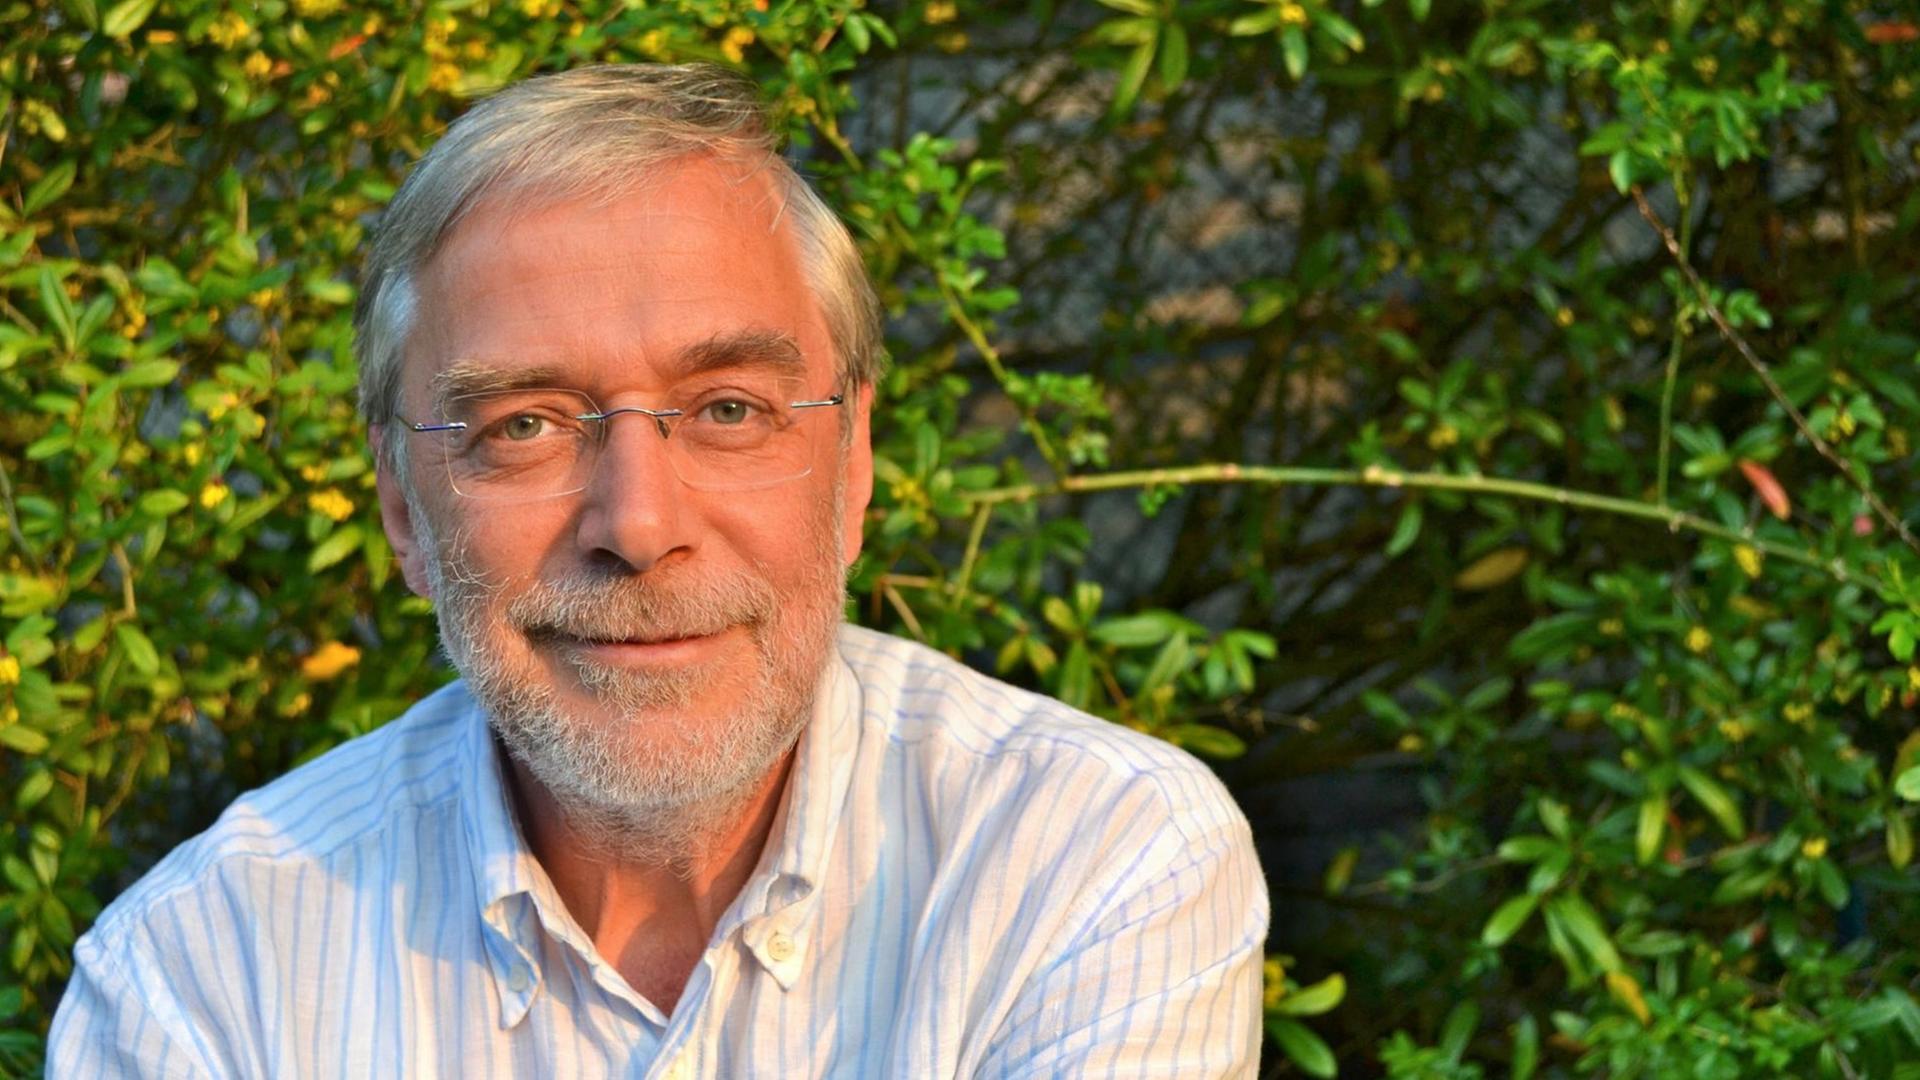 Der Neurobiologe Gerald Hüther, fotografiert in einem hell gestreifen Hemd vor einer grünen Hecke